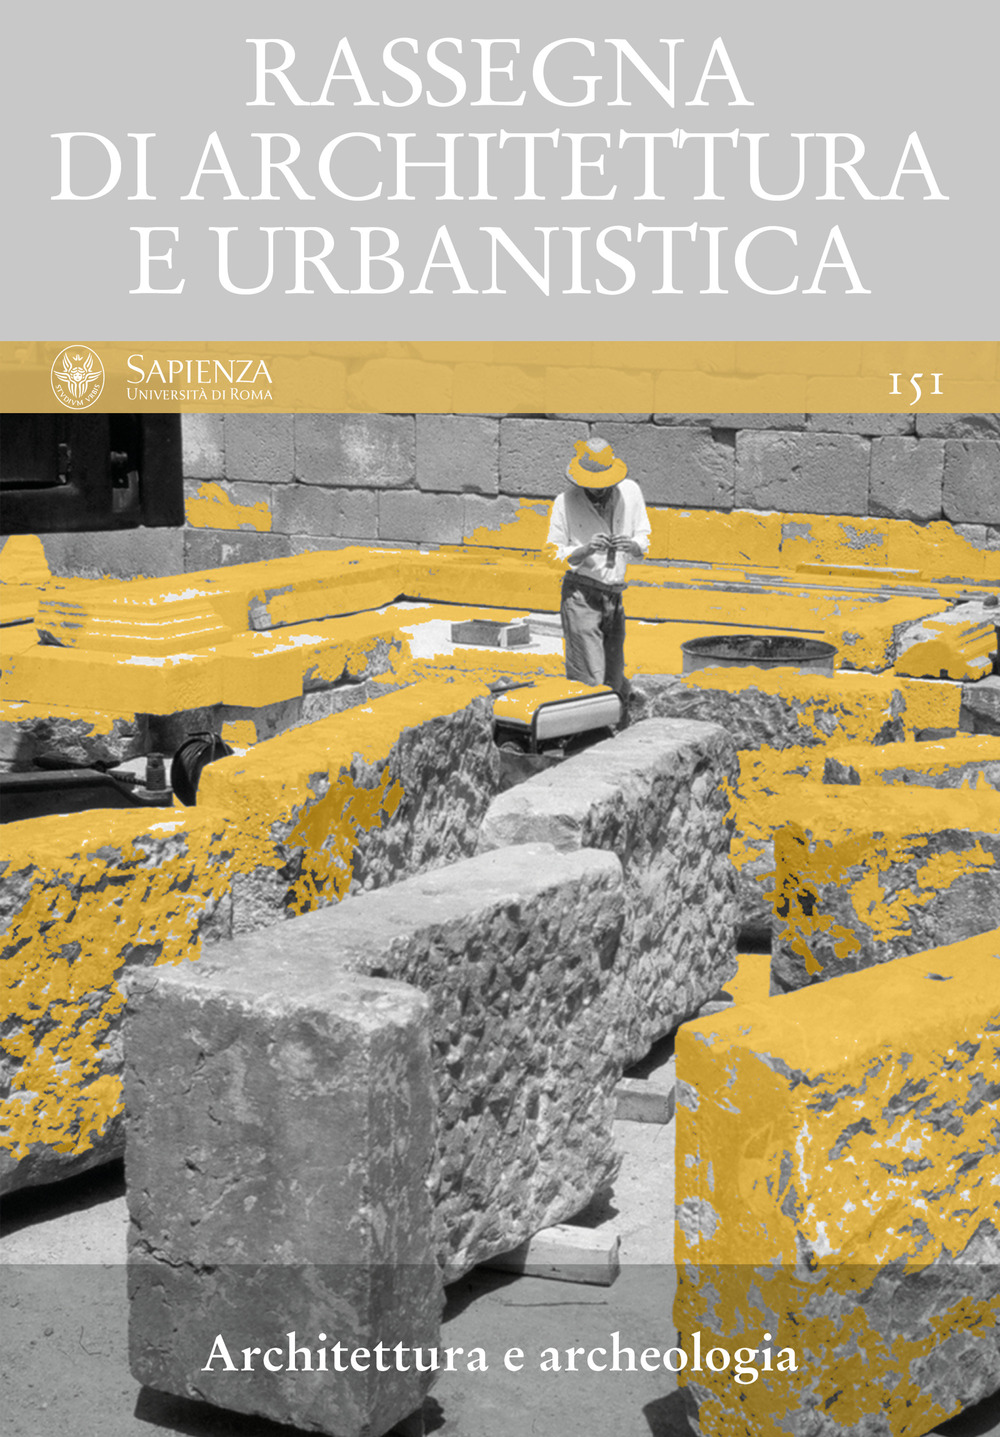 Rassegna di architettura e urbanistica. Vol. 151: Architettura e archeologia